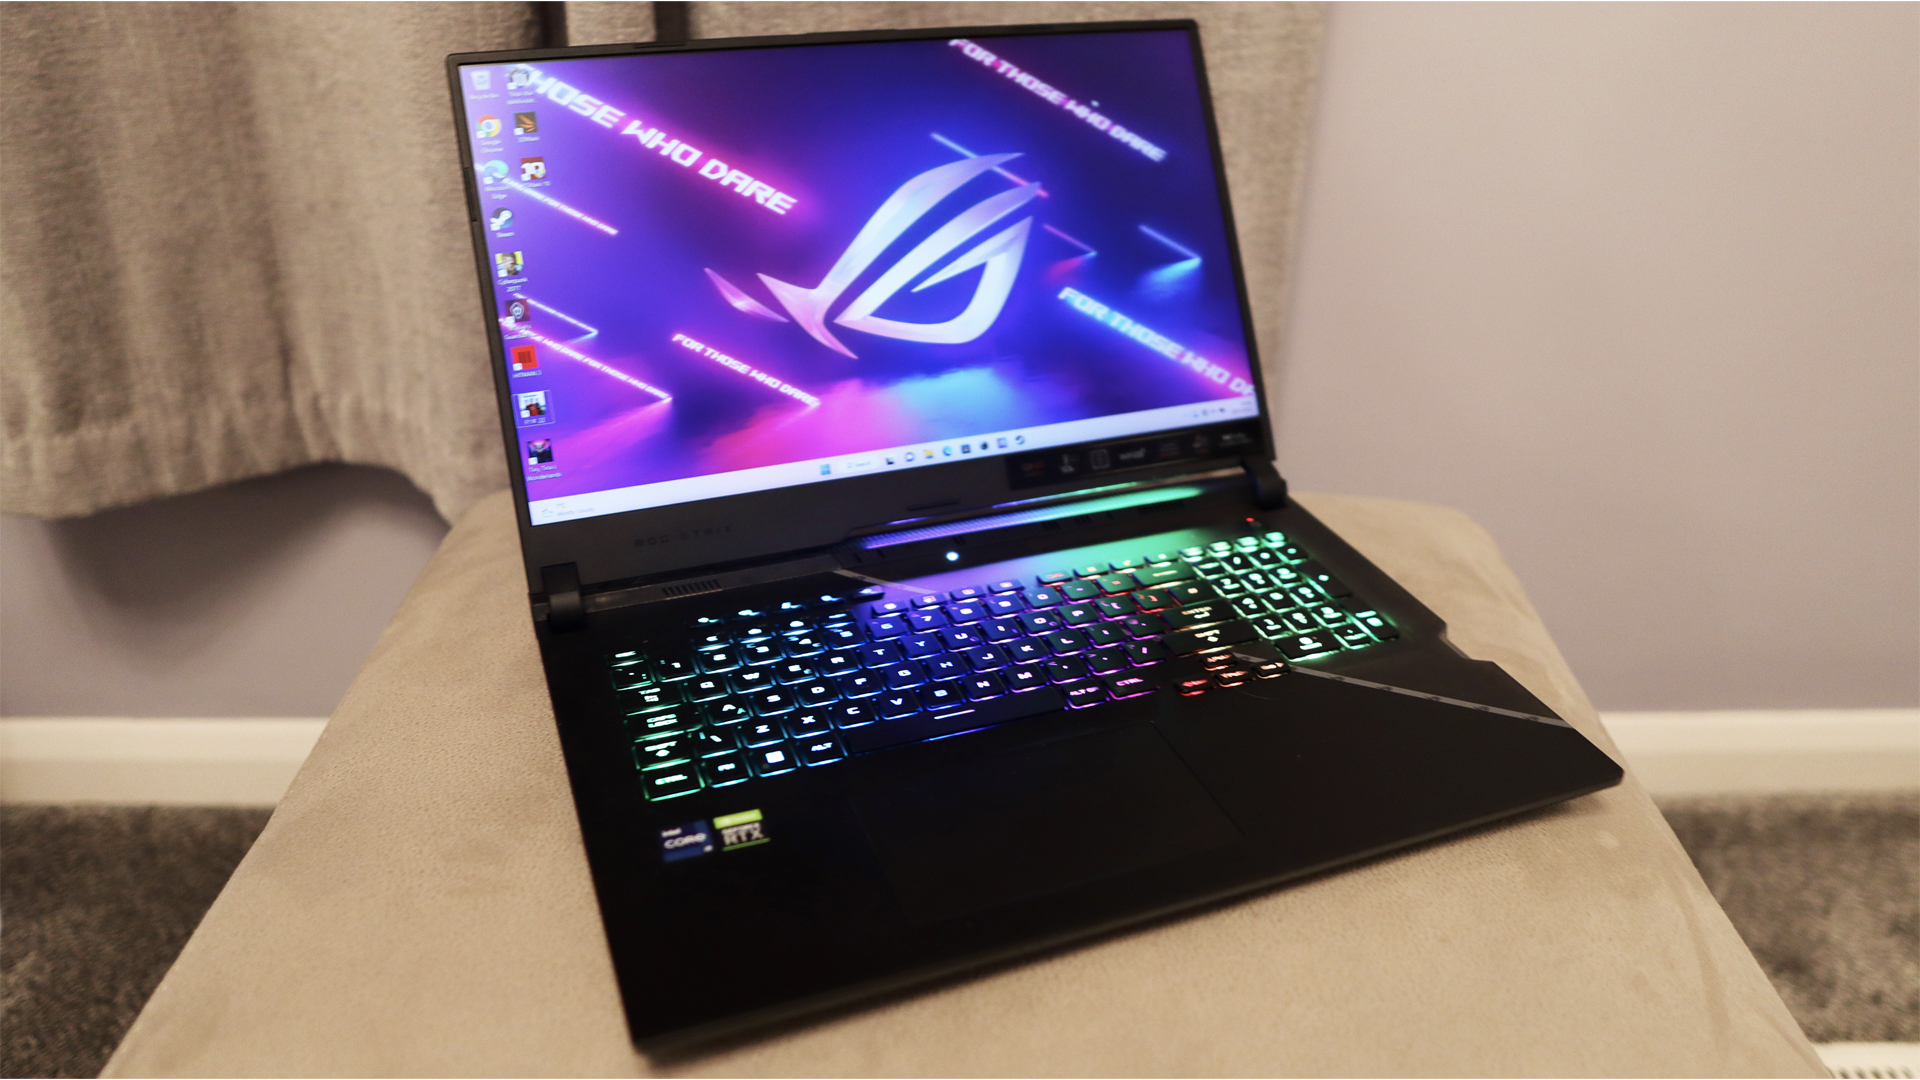 Ulasan Asus ROG Strix Scar 17: Laptop gaming diletakkan di atas dudukan krem, keyboard RGB-nya bersinar terang